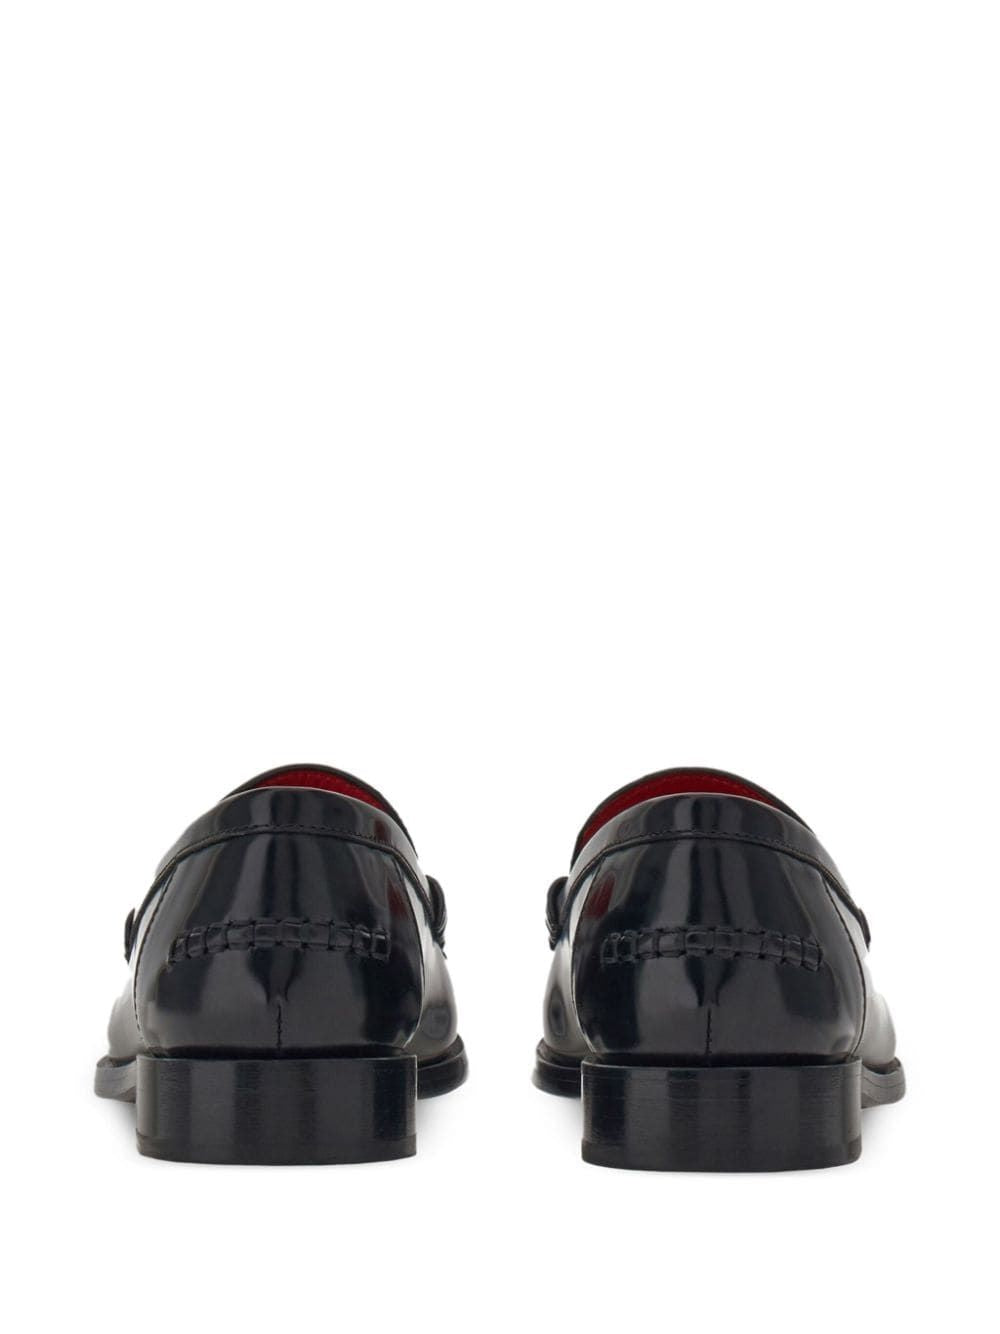 黑色皮革平底鞋- FW23系列